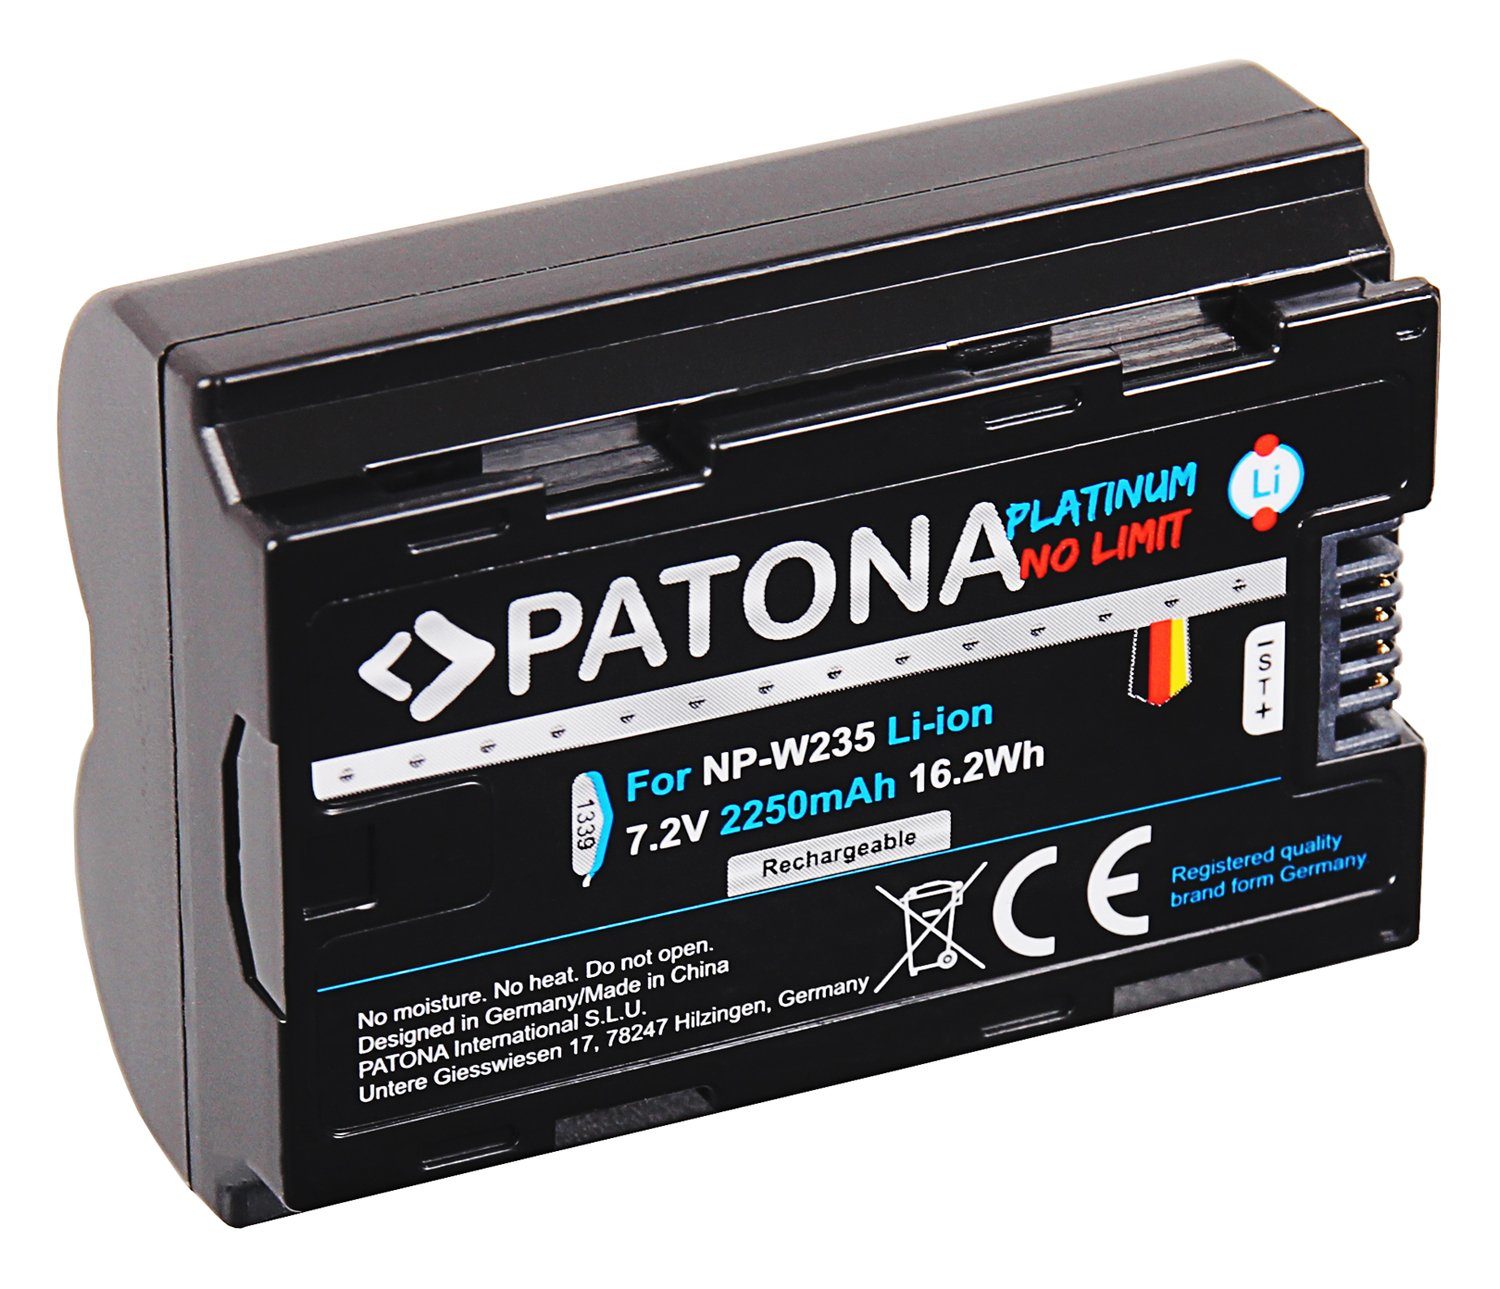 Patona Platinum Akku XT4 NP-W235 Kamera-Akku für 2250 Fujifilm / XT-4 mAh die